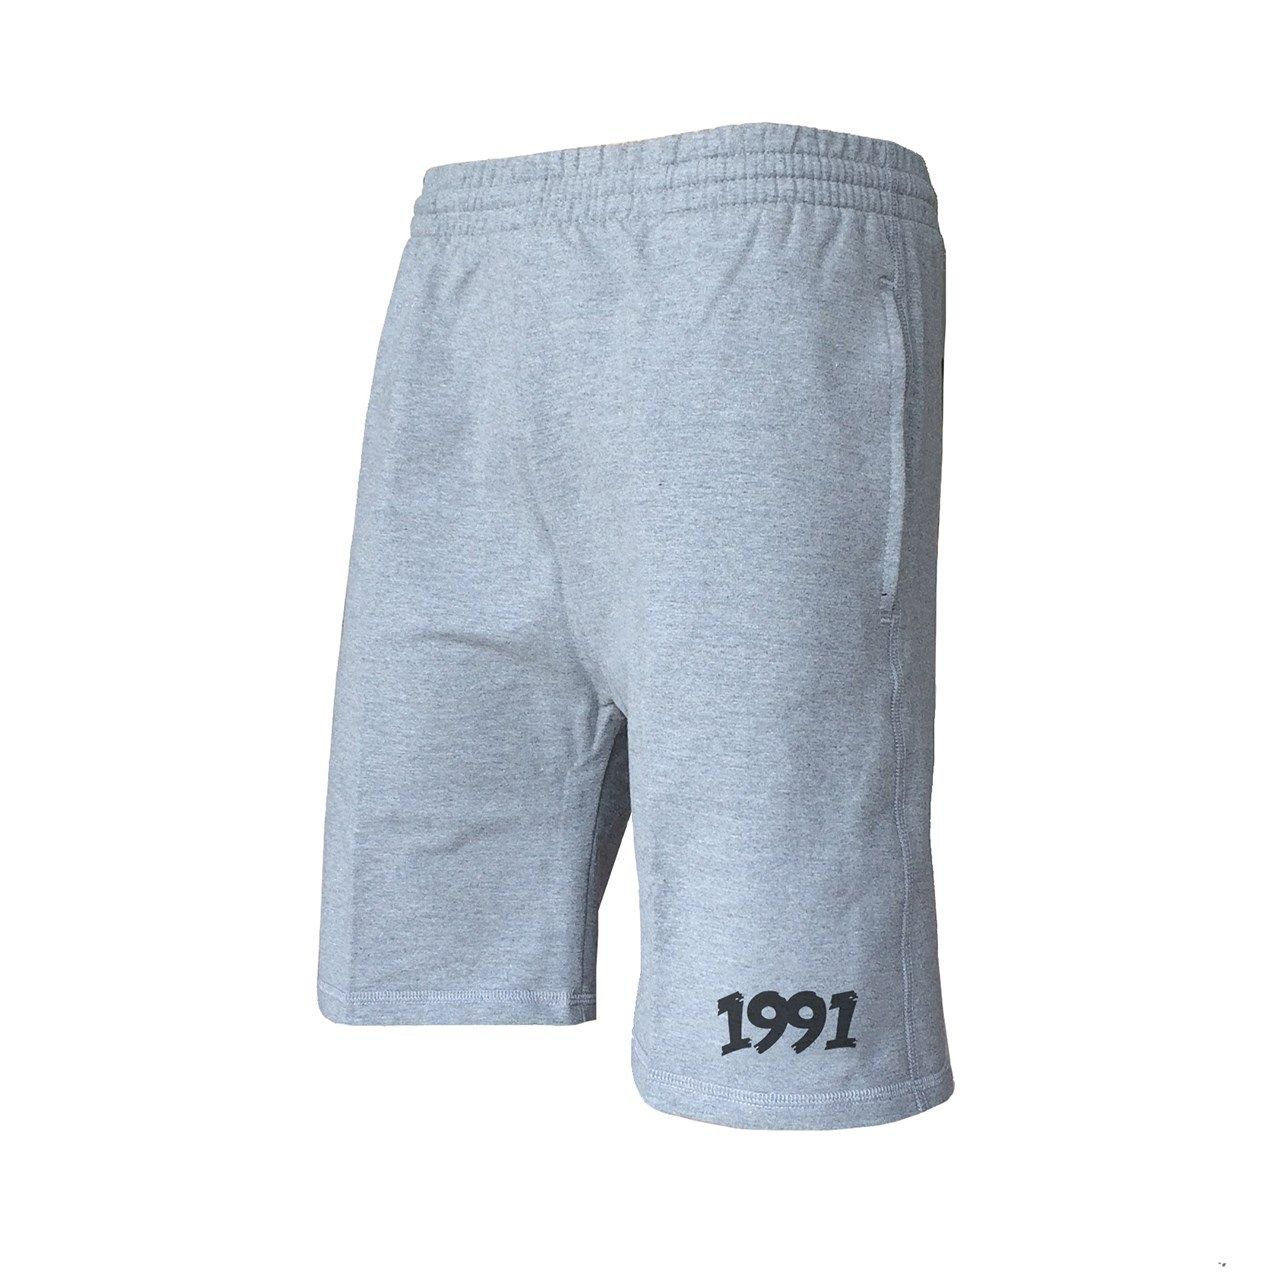 شلوارک ورزشی مردانه 1991 اس دبلیو مدل shorts Simplex Gray